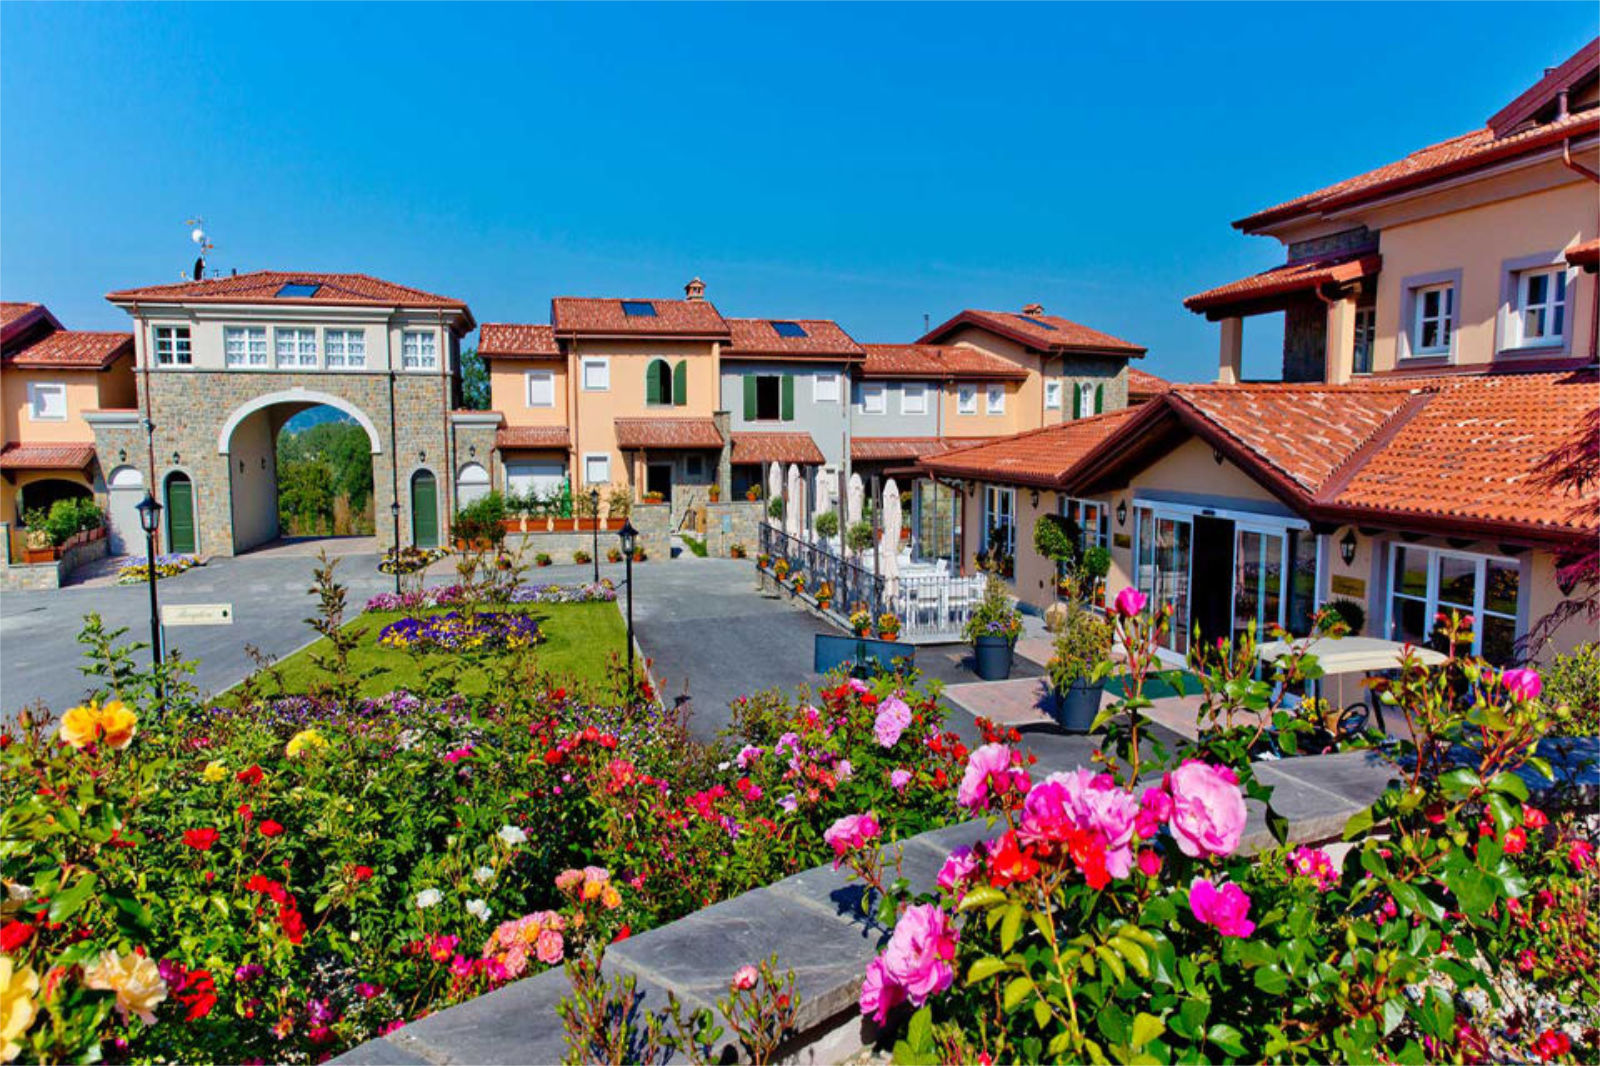 Villa Carolina Resort